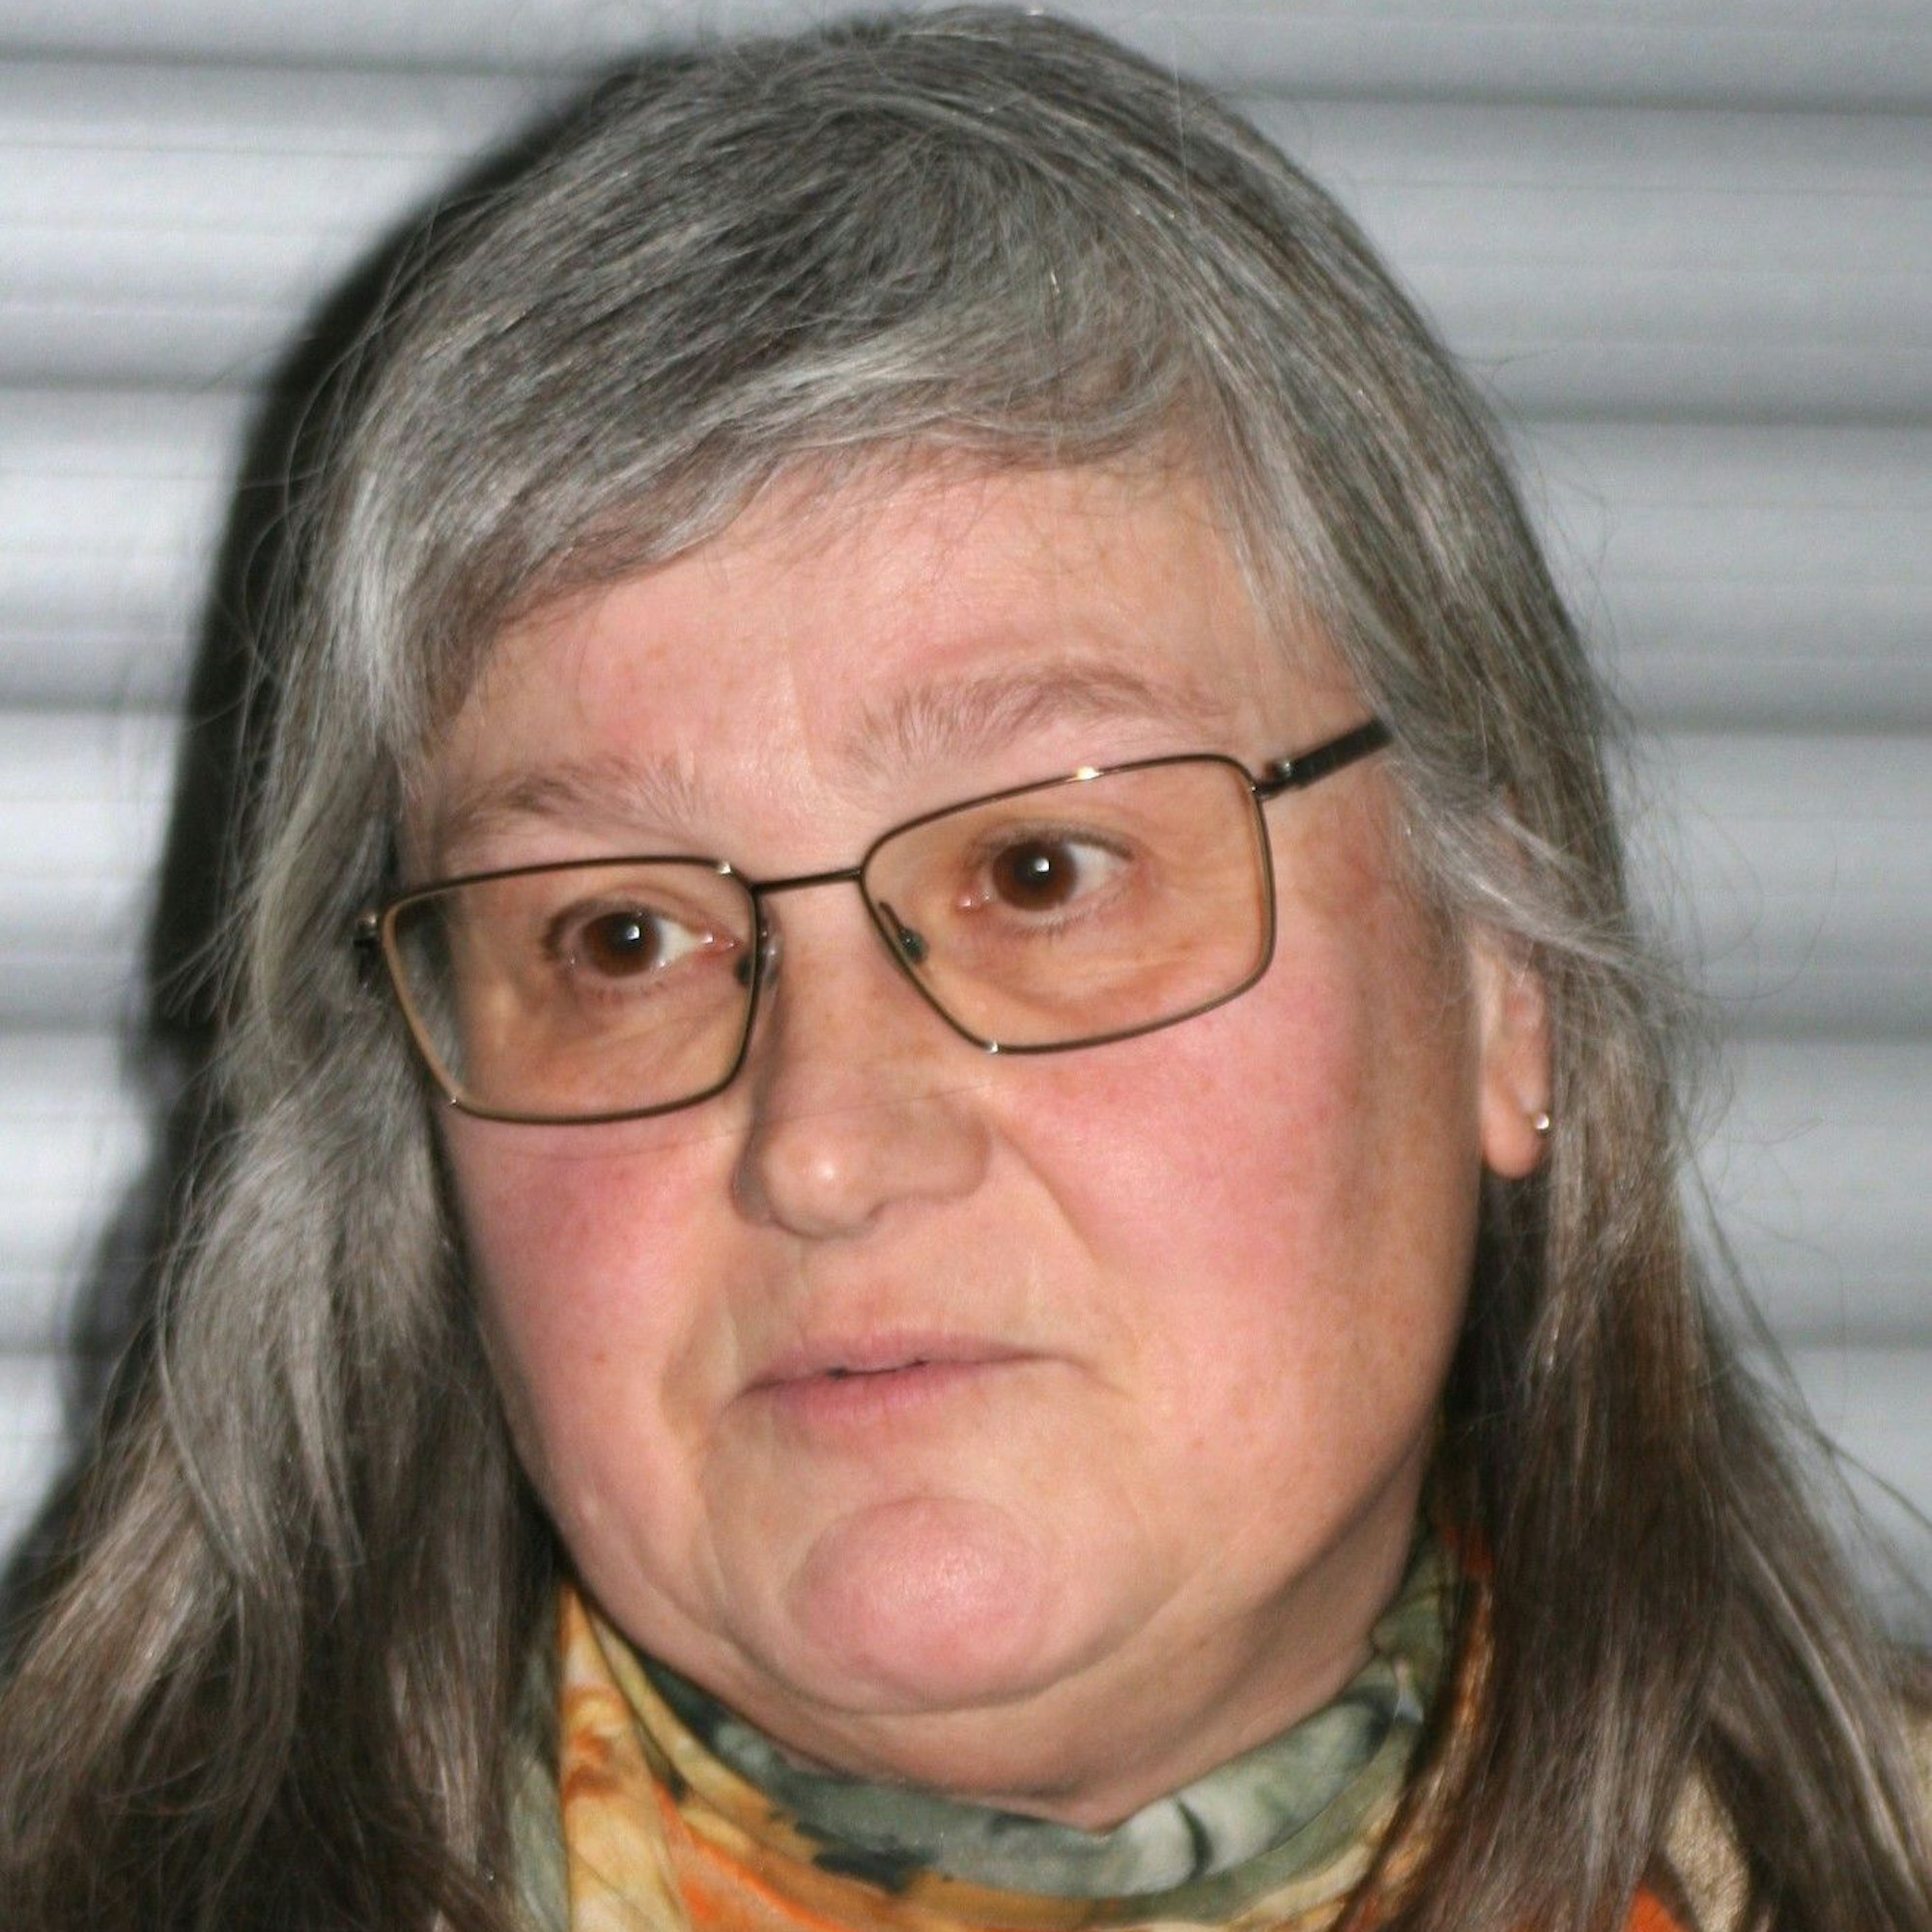 Eine Frau mit langen grauen Haaren und einer Brille. Sie trägt ein buntes Halstuch.